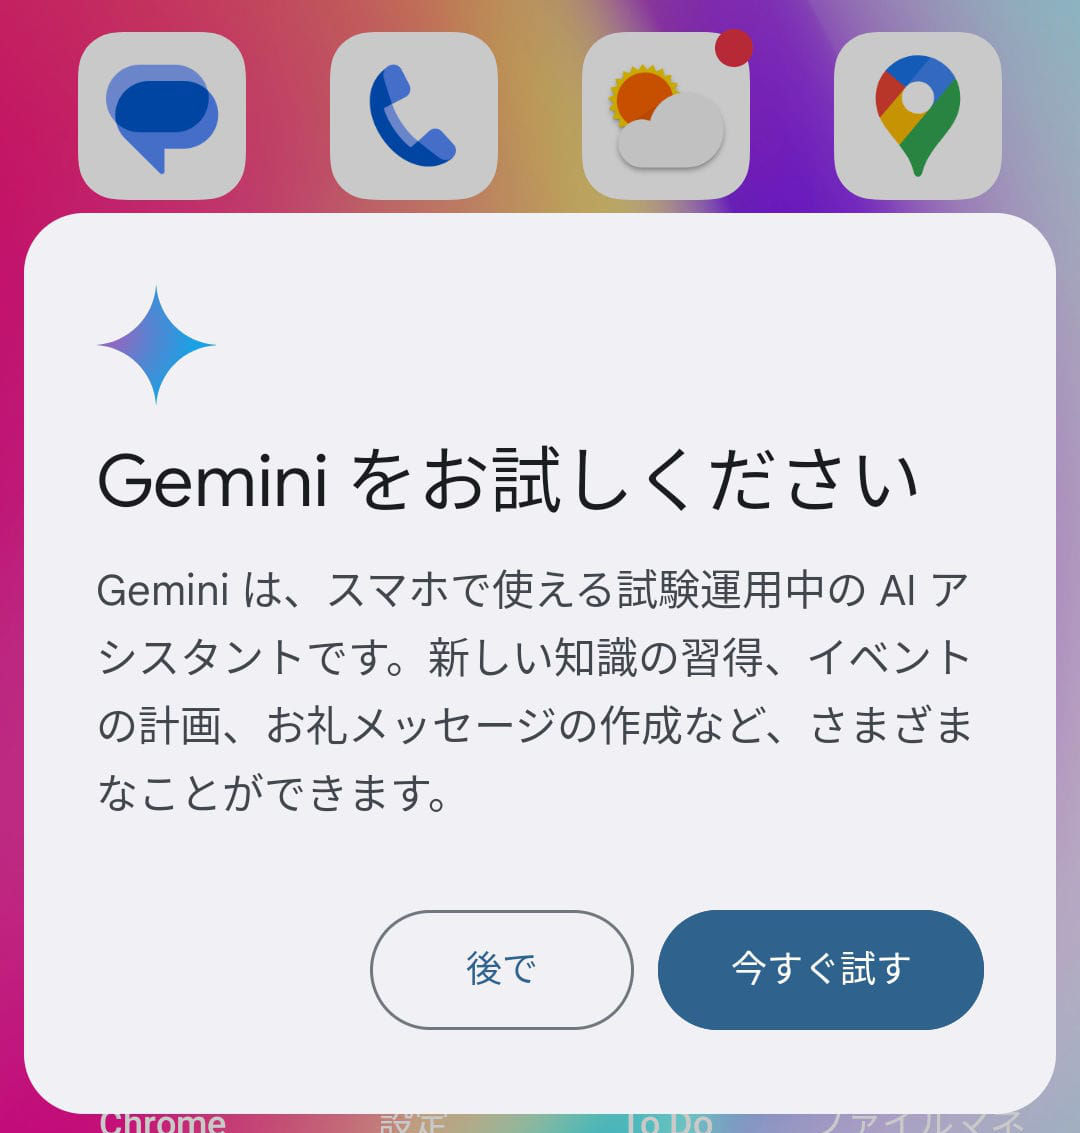 Android AI Gemini 5